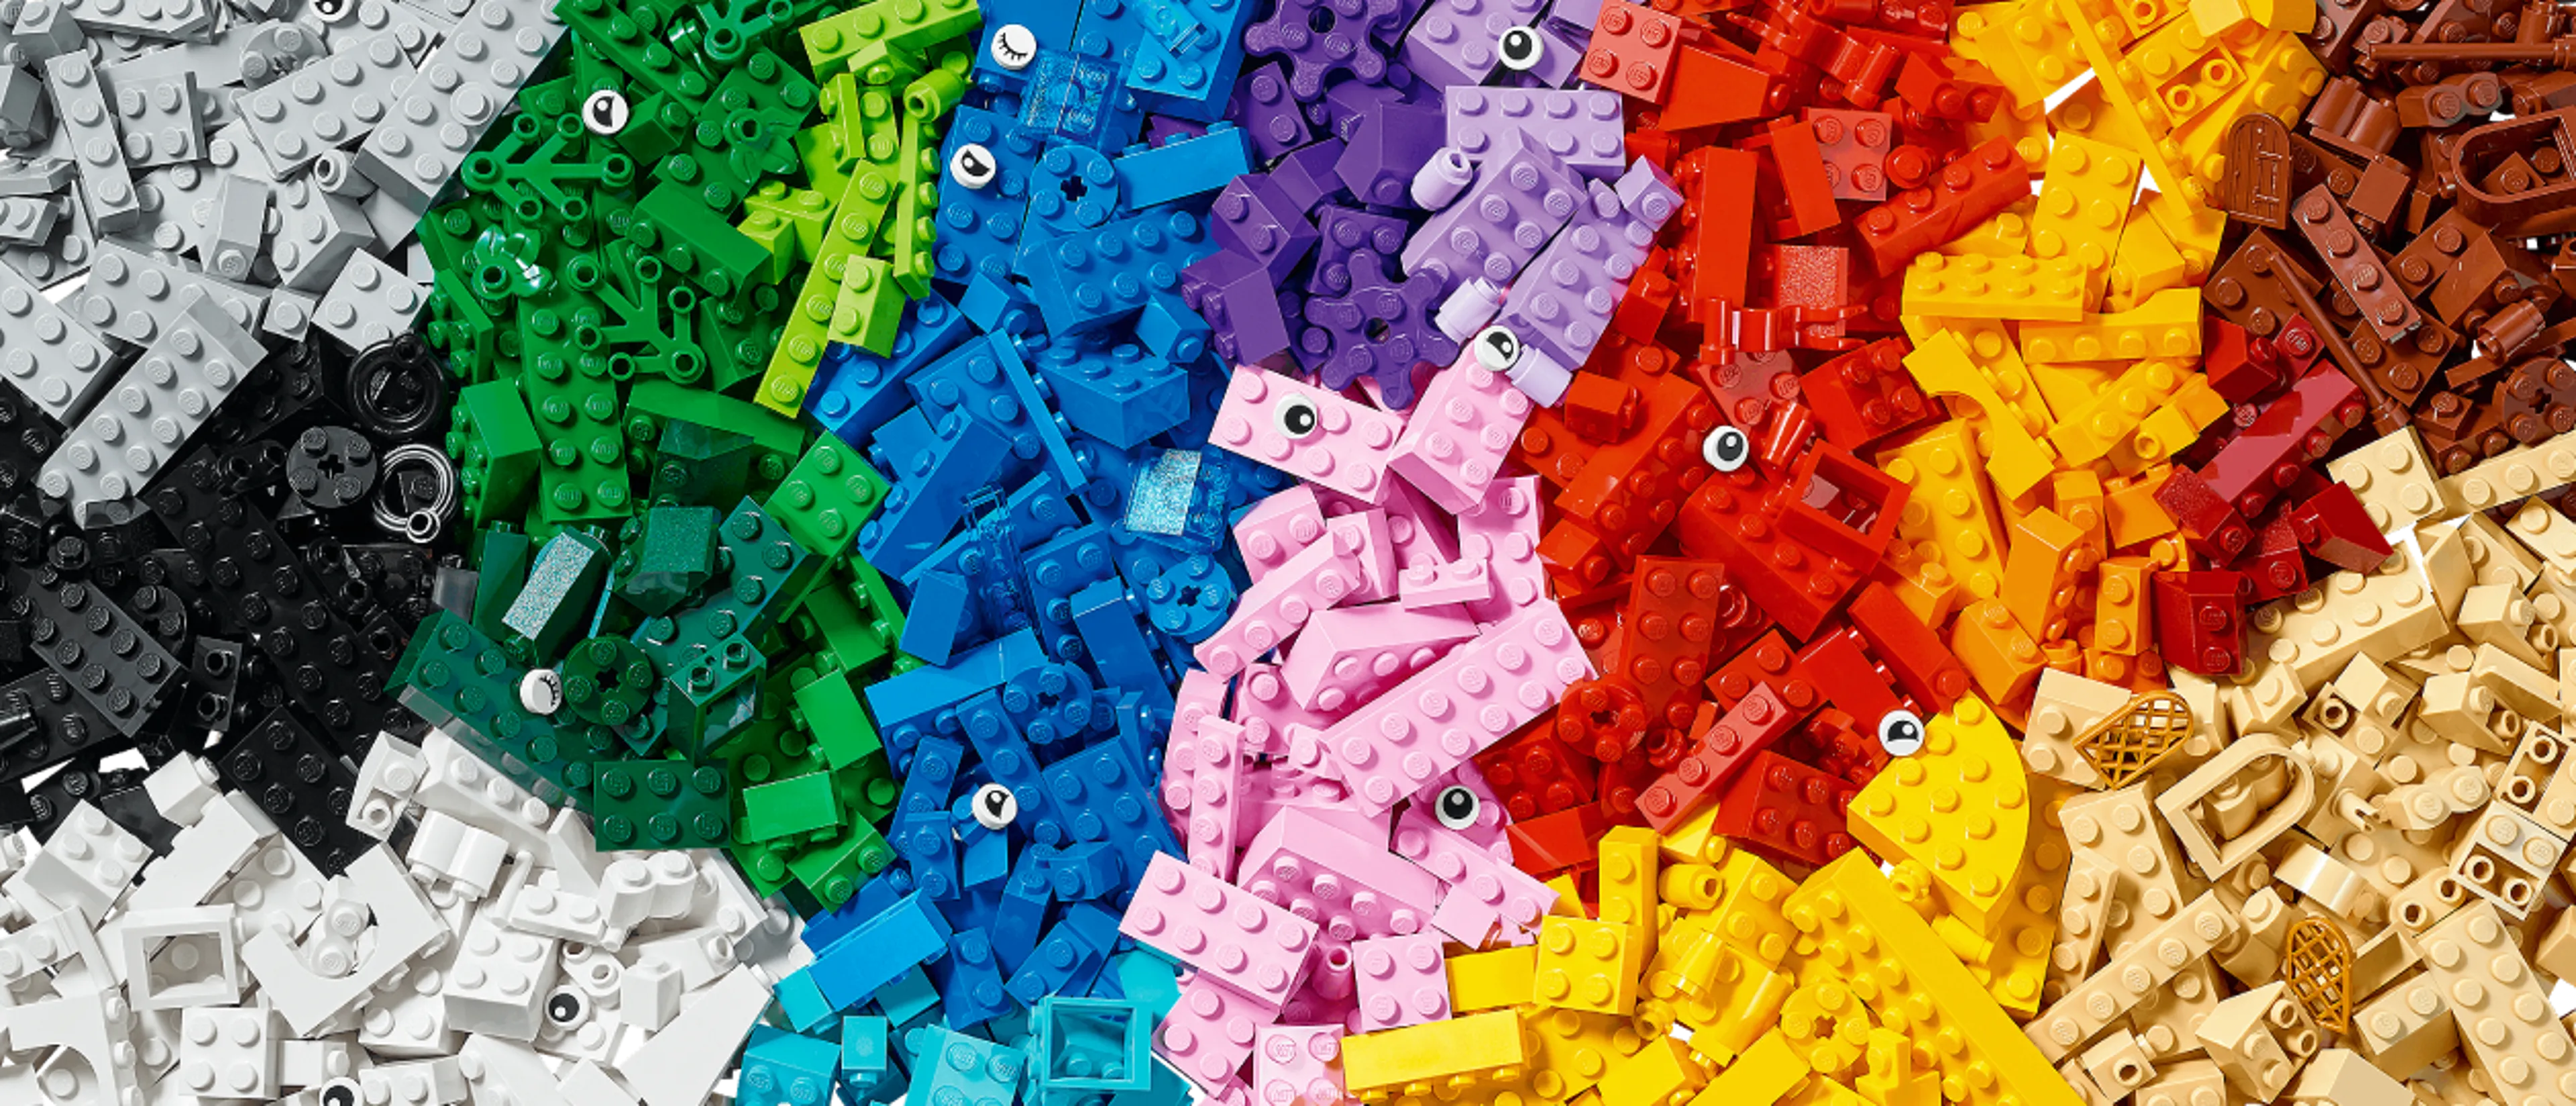 LEGO® bricks in descending size